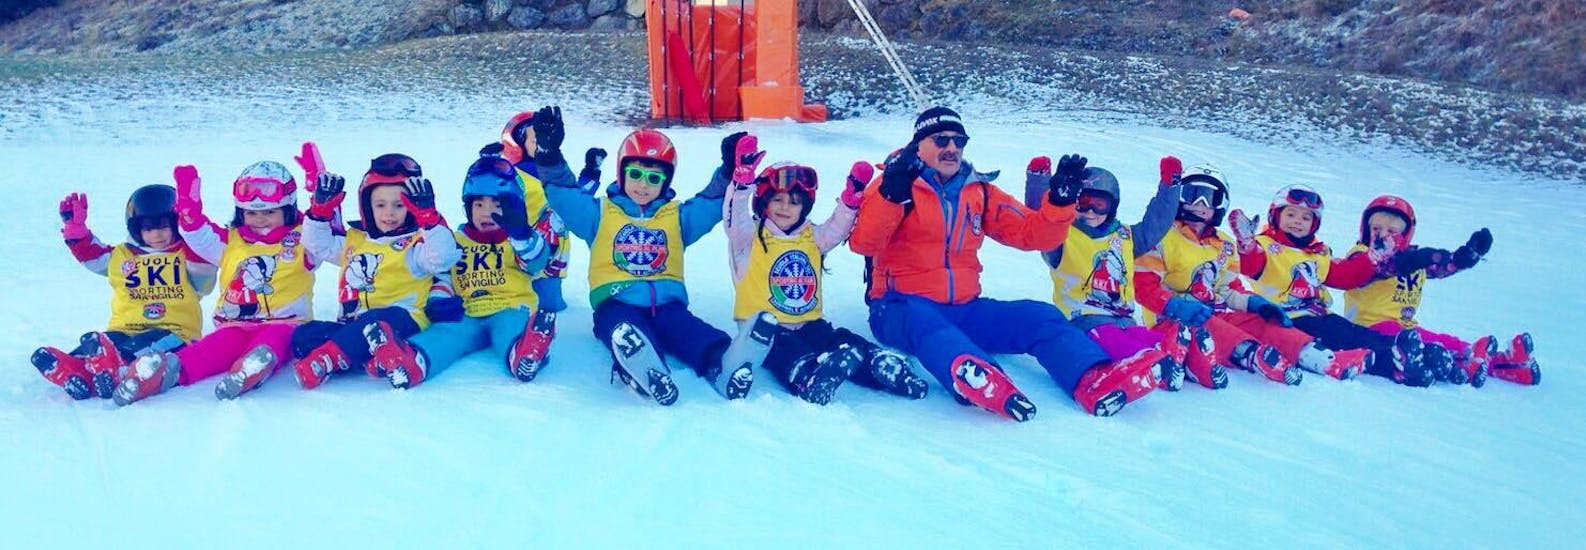 Lezioni di sci per bambini (3-14 anni) - Natale.